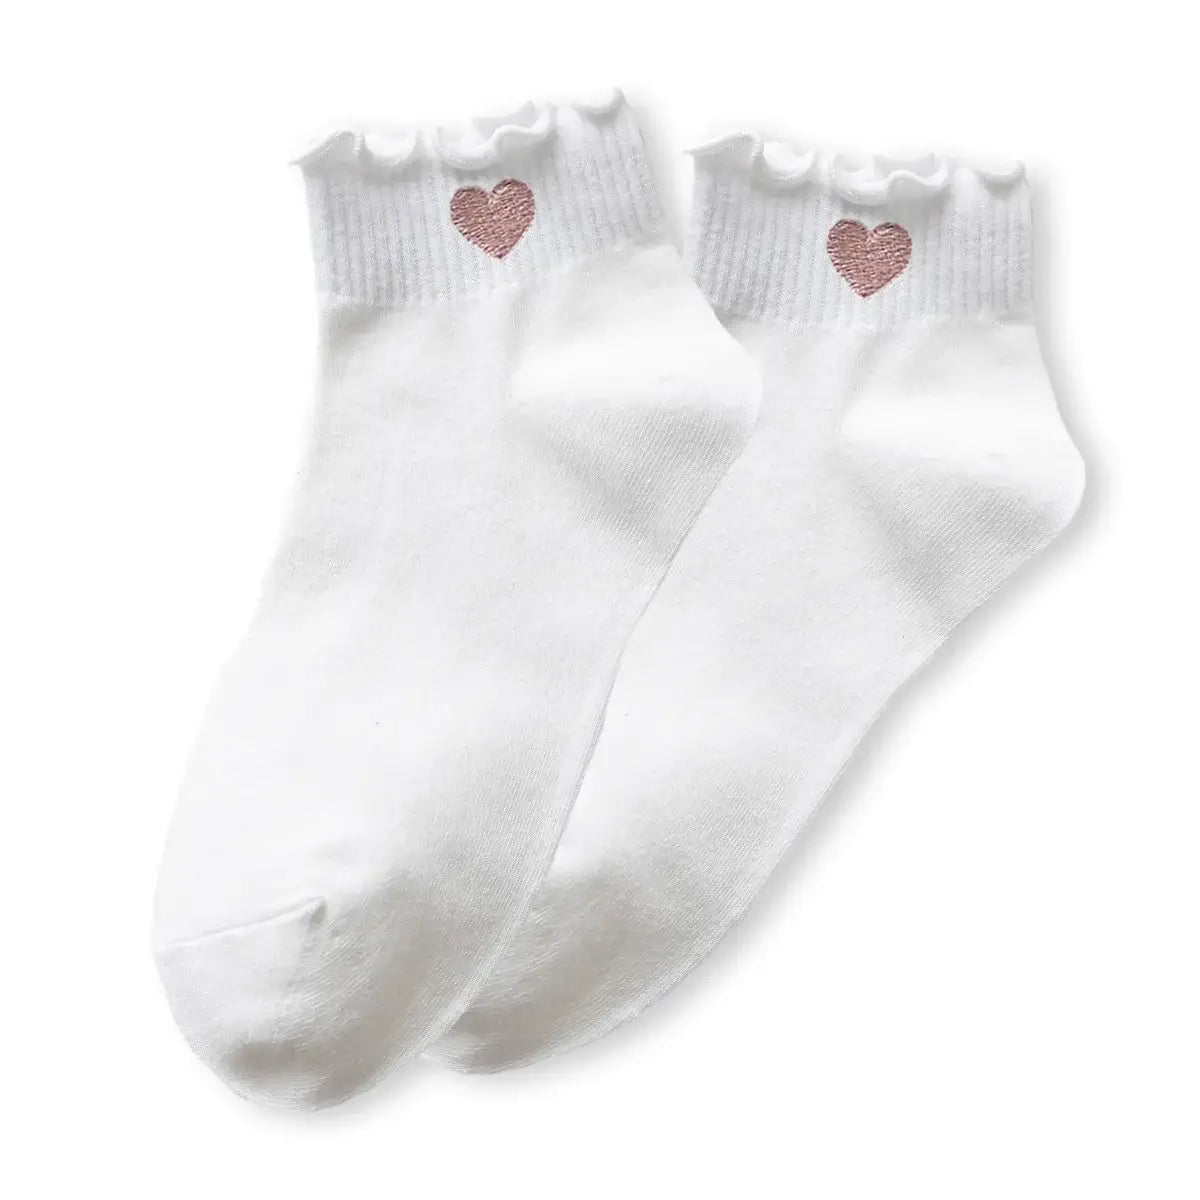 Chaussettes dentelle blanche en coton à motif cœur rouge pour femme | Chaussettes élégantes et confortables | Un cadeau parfait pour les femmes | Disponibles en plusieurs couleurs.